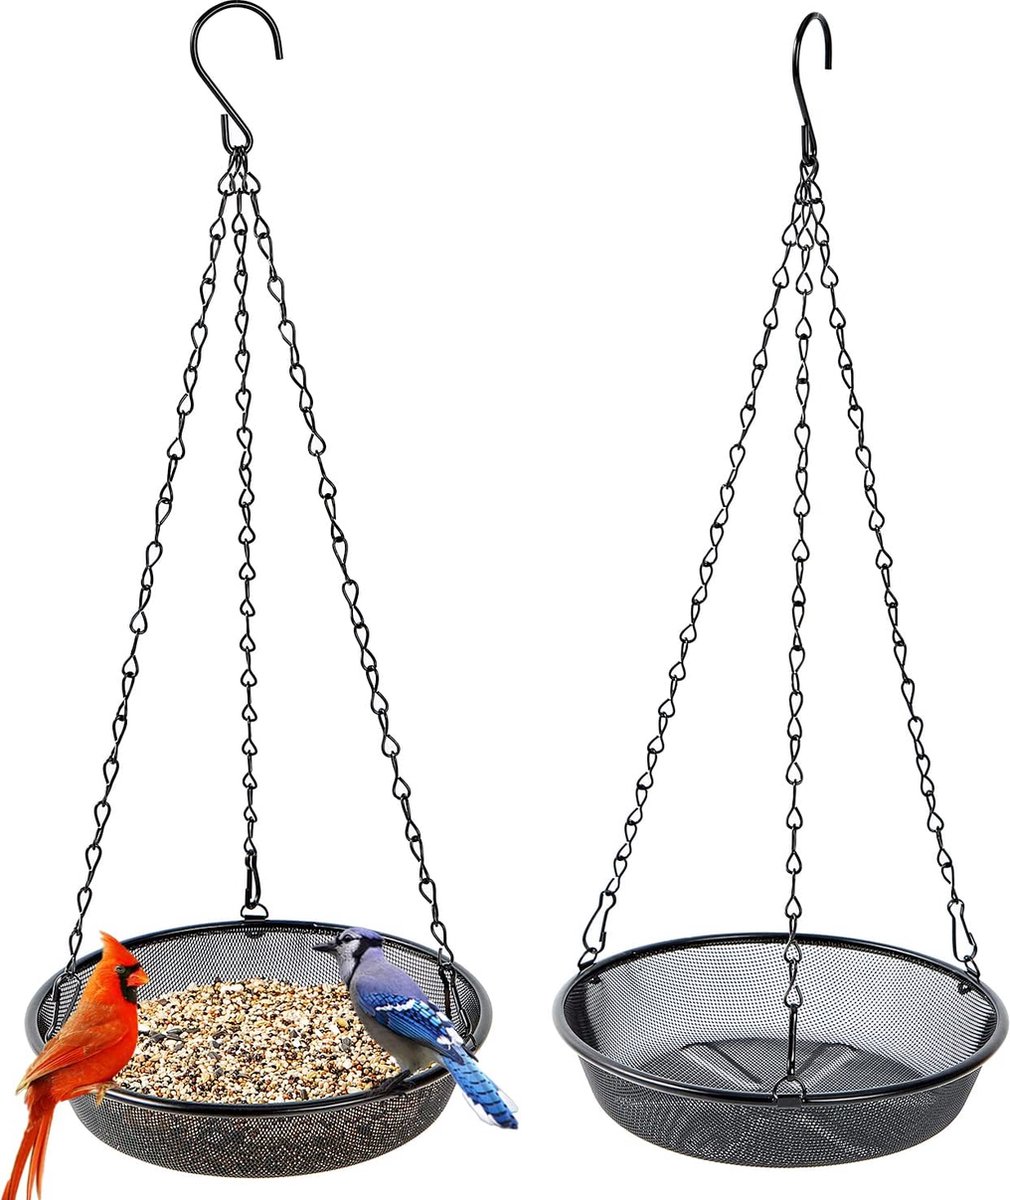 Set van 2 mesh ronde feeders, metalen mesh vogelvoeder om op te hangen, voederplatform voor vogels, buitentuindecoratie voor wilde achtertuin, trekt vogels aan. Diameter 21,5 cm